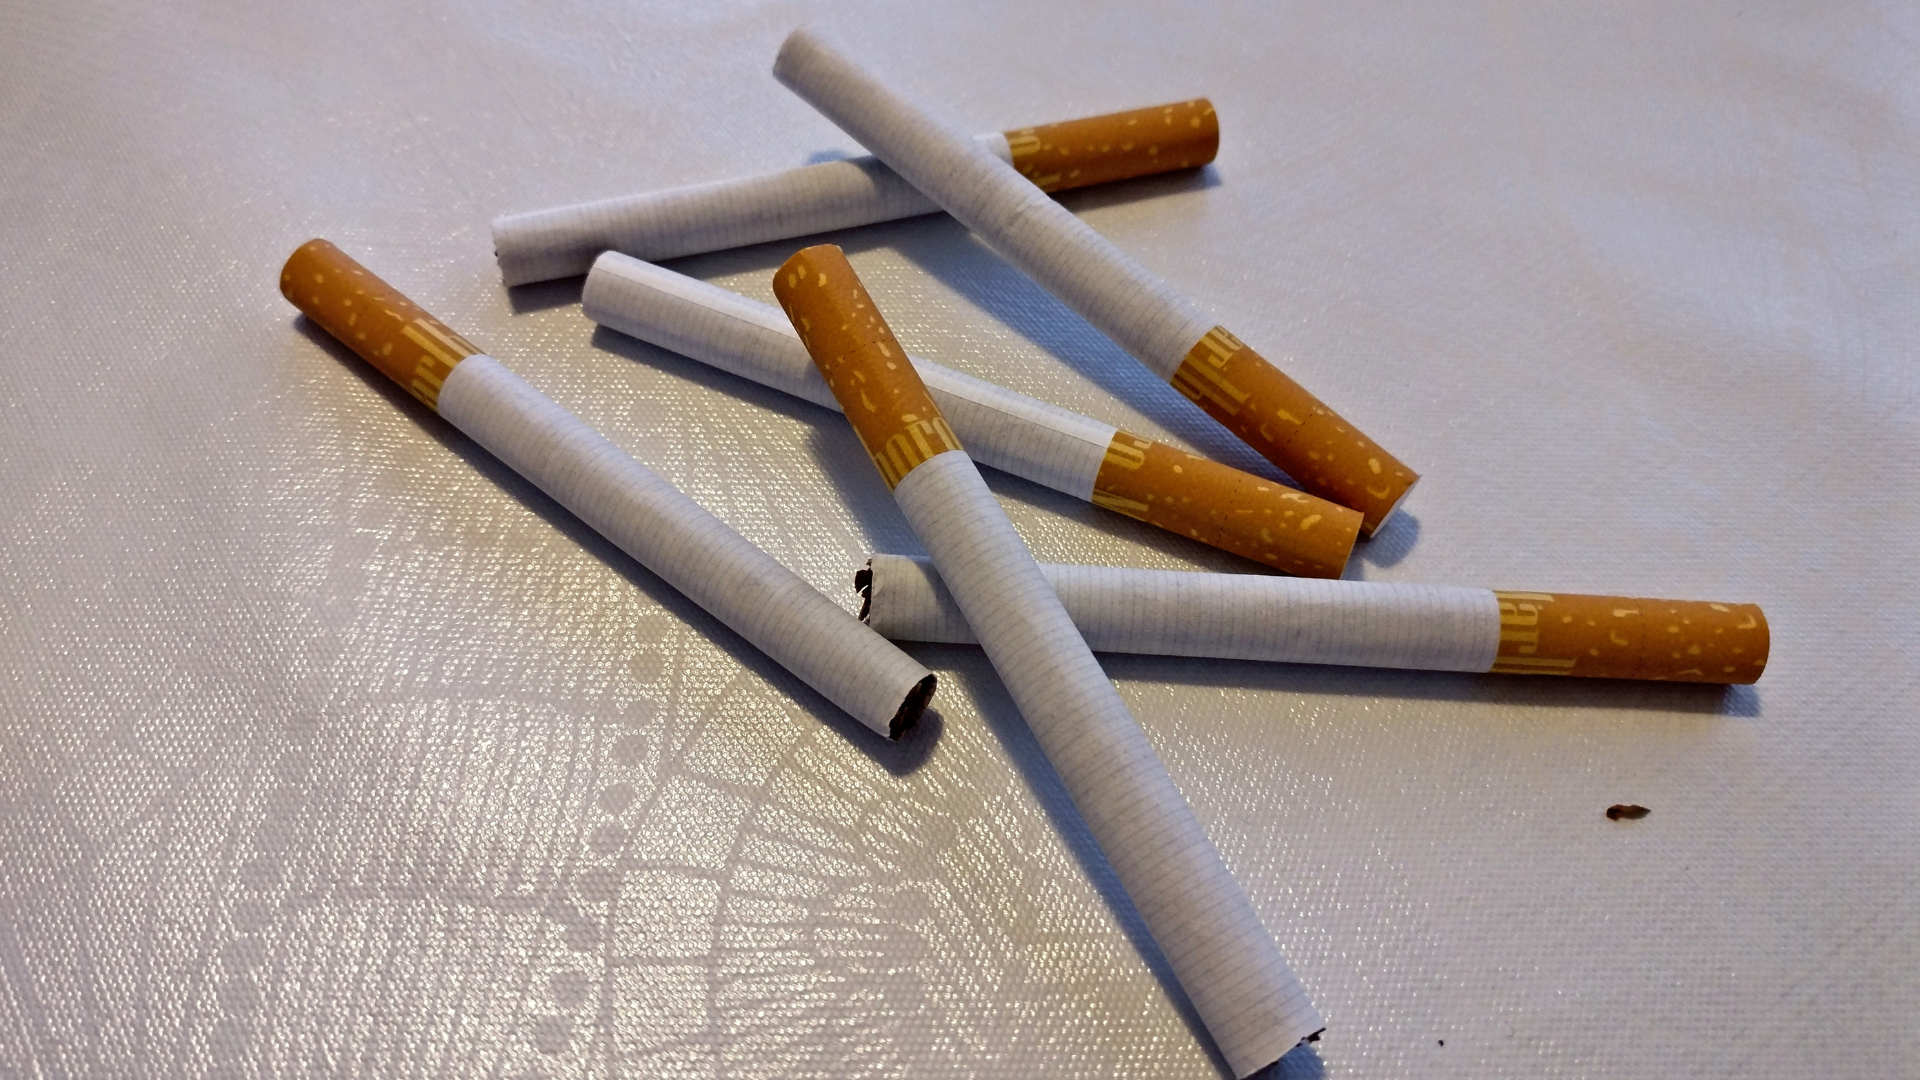 cigarettes